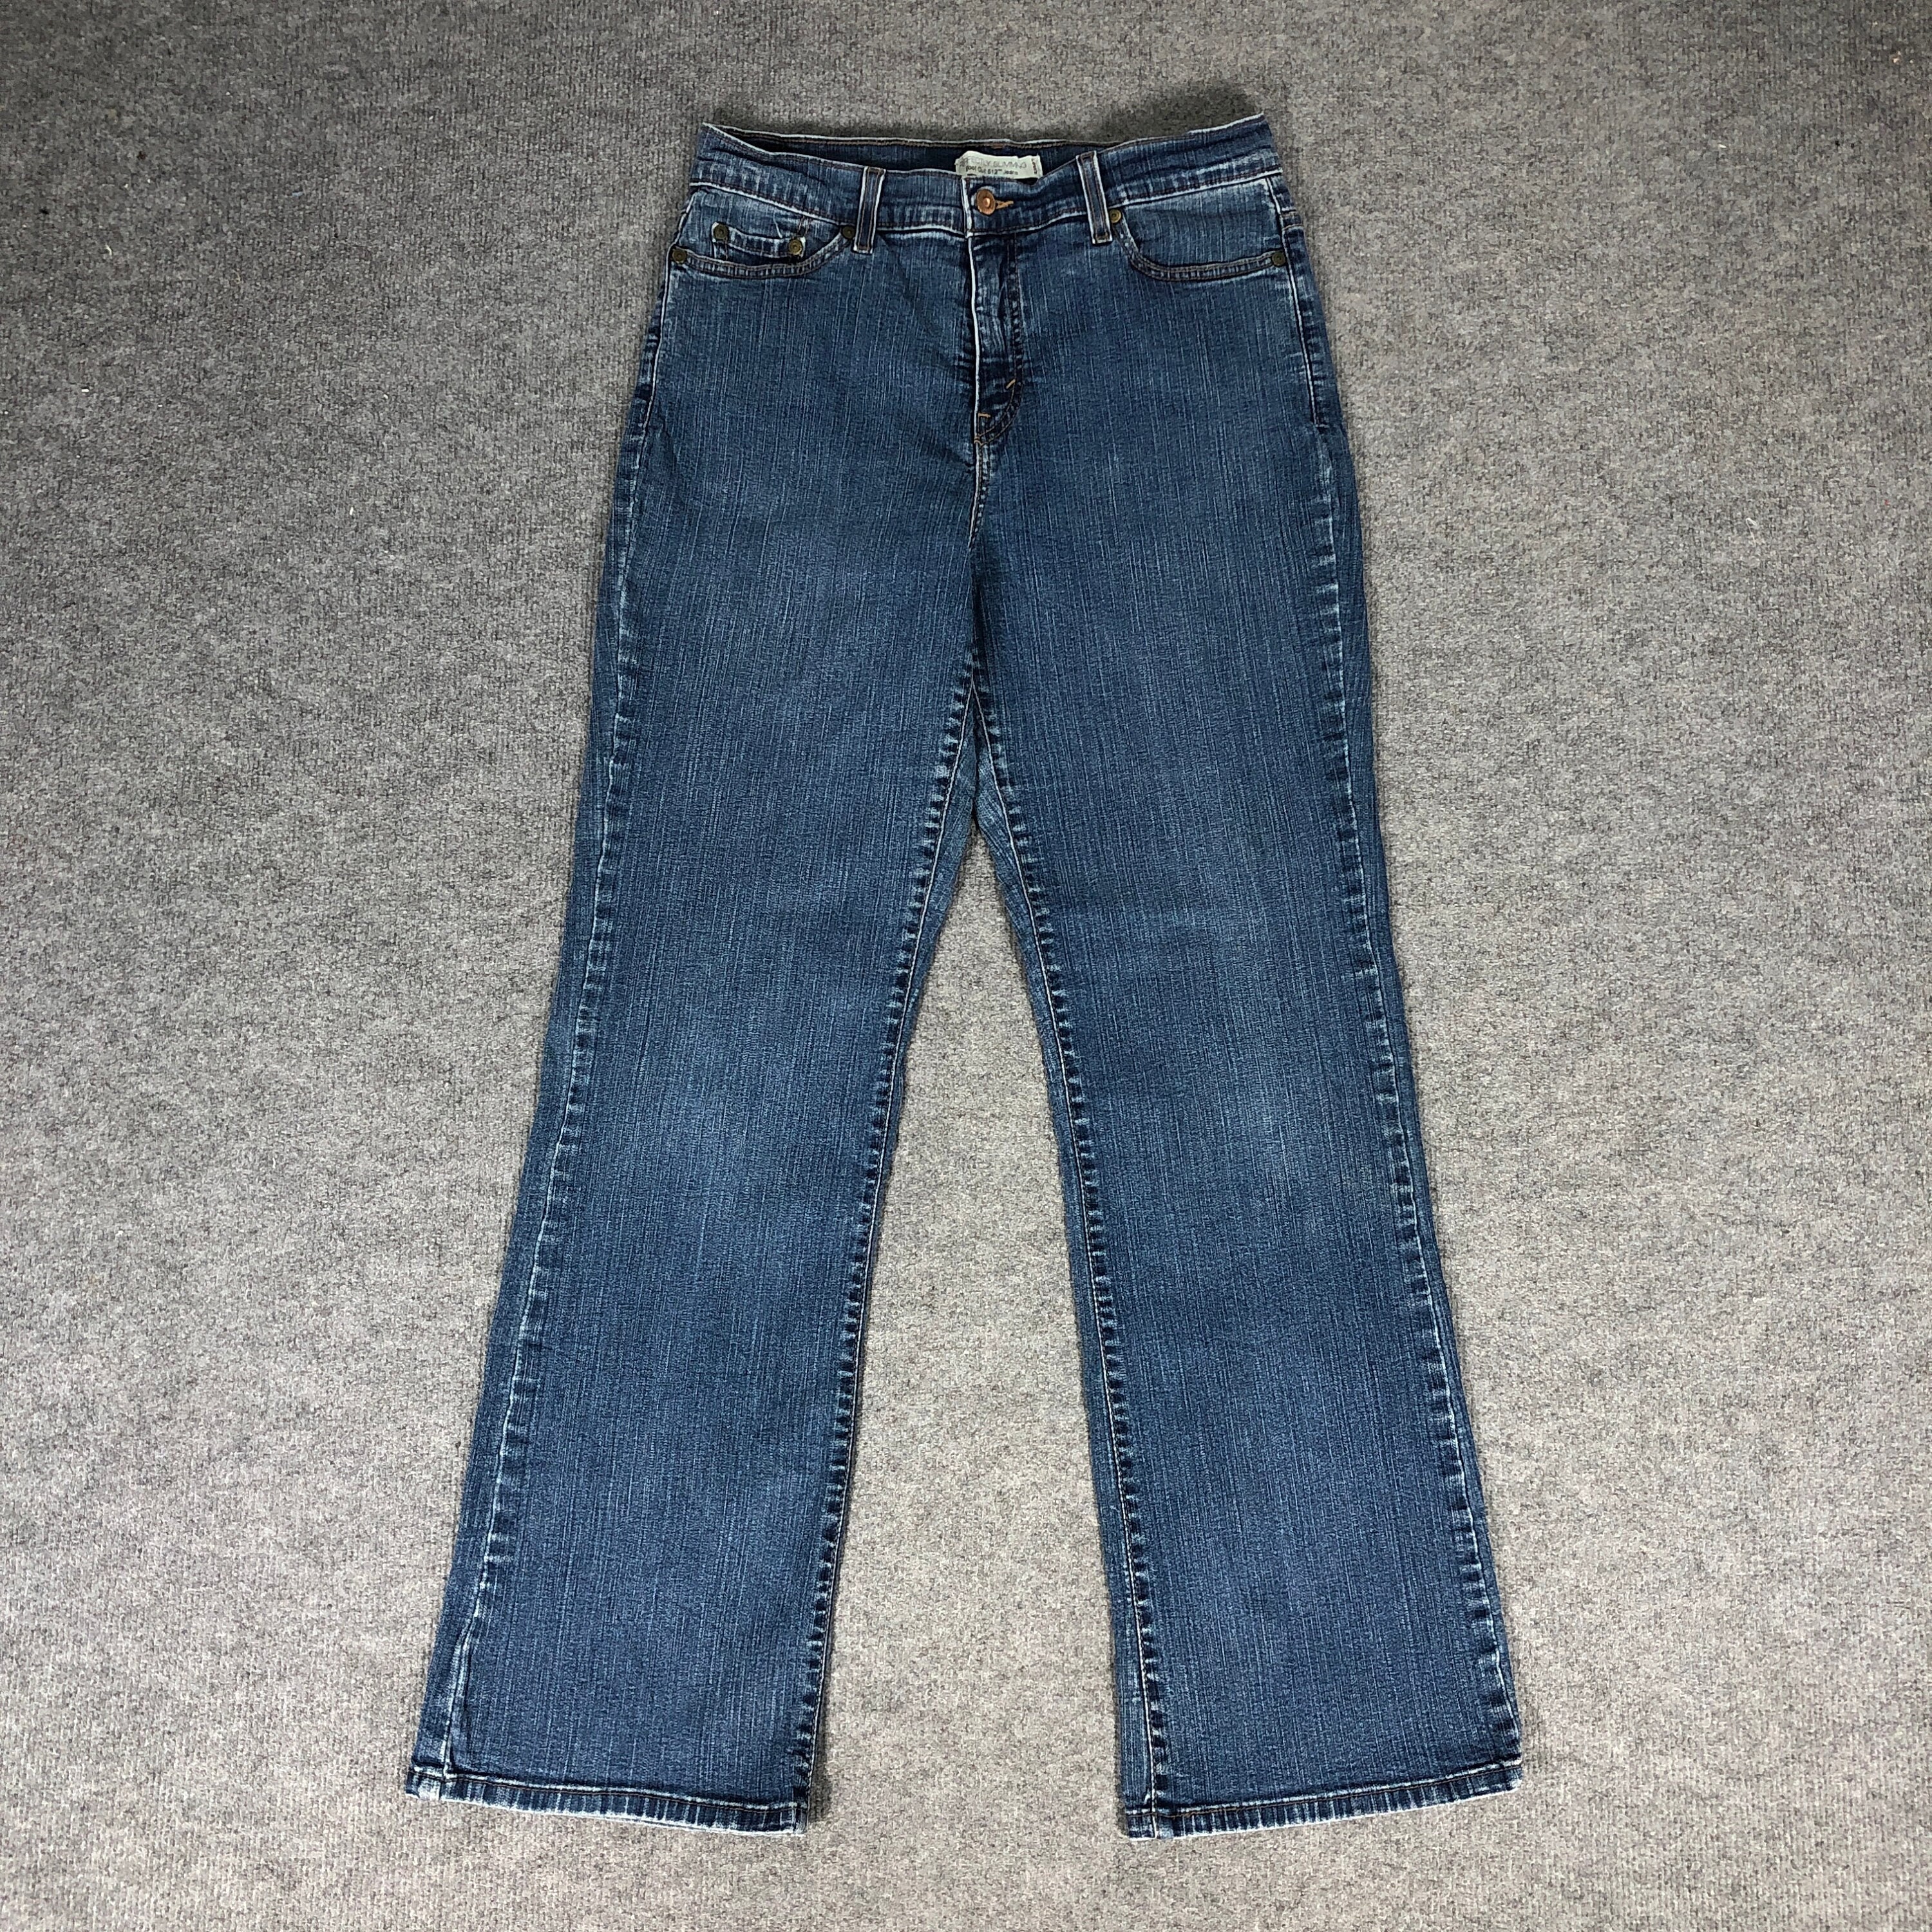 31 X 32 Vintage Levis 512 Jeans Flare Jeans Light Wash - Etsy Sweden